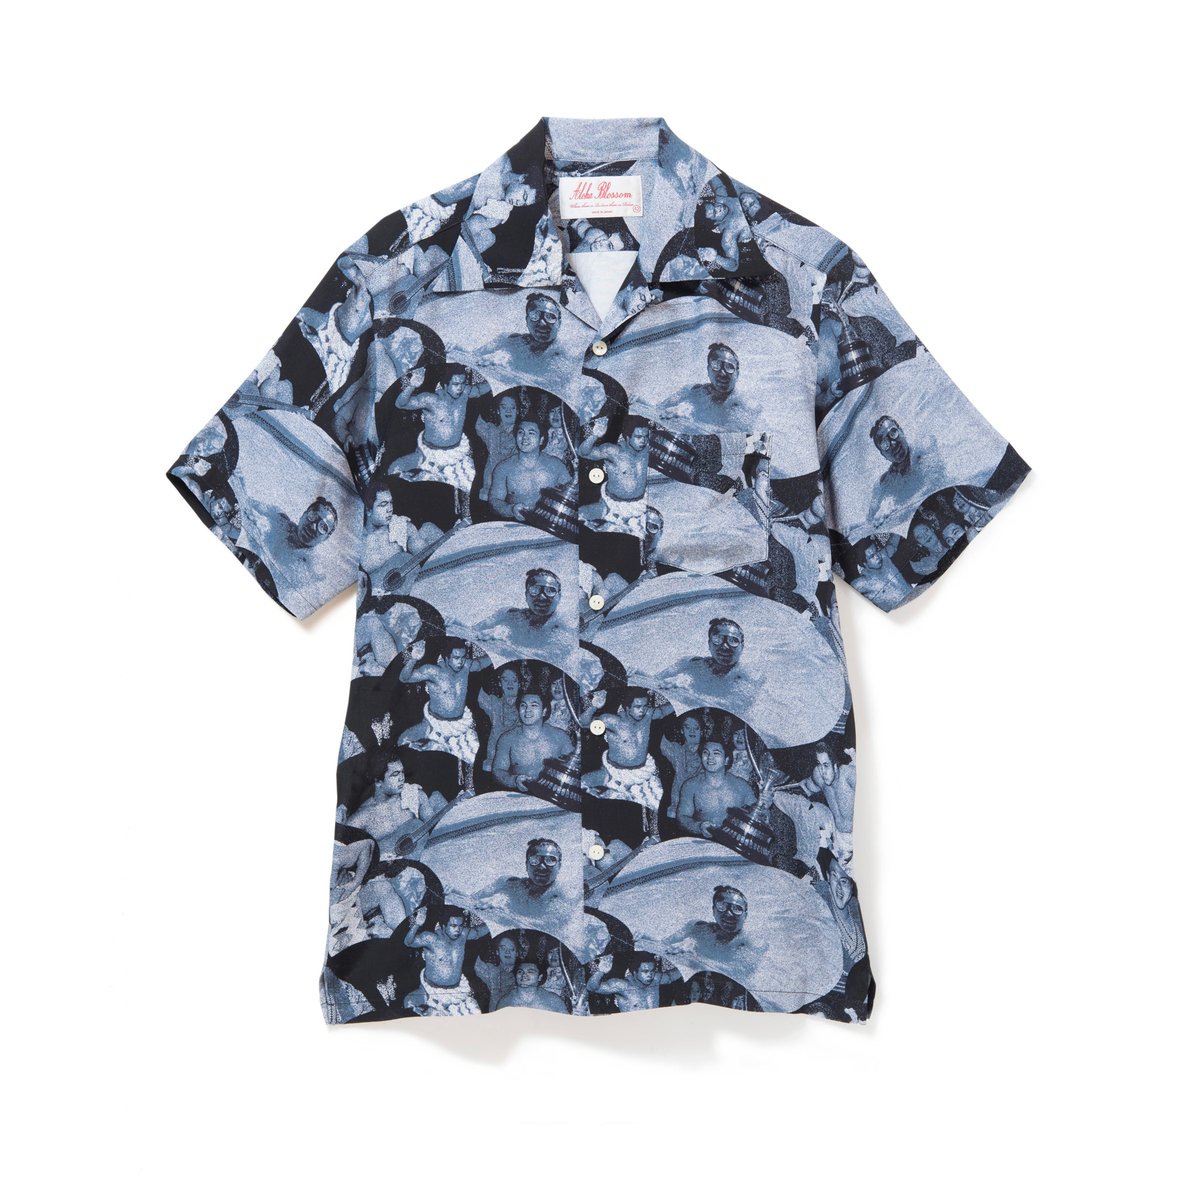 アロハブロッサム Aloha blossom 44 XL - シャツ